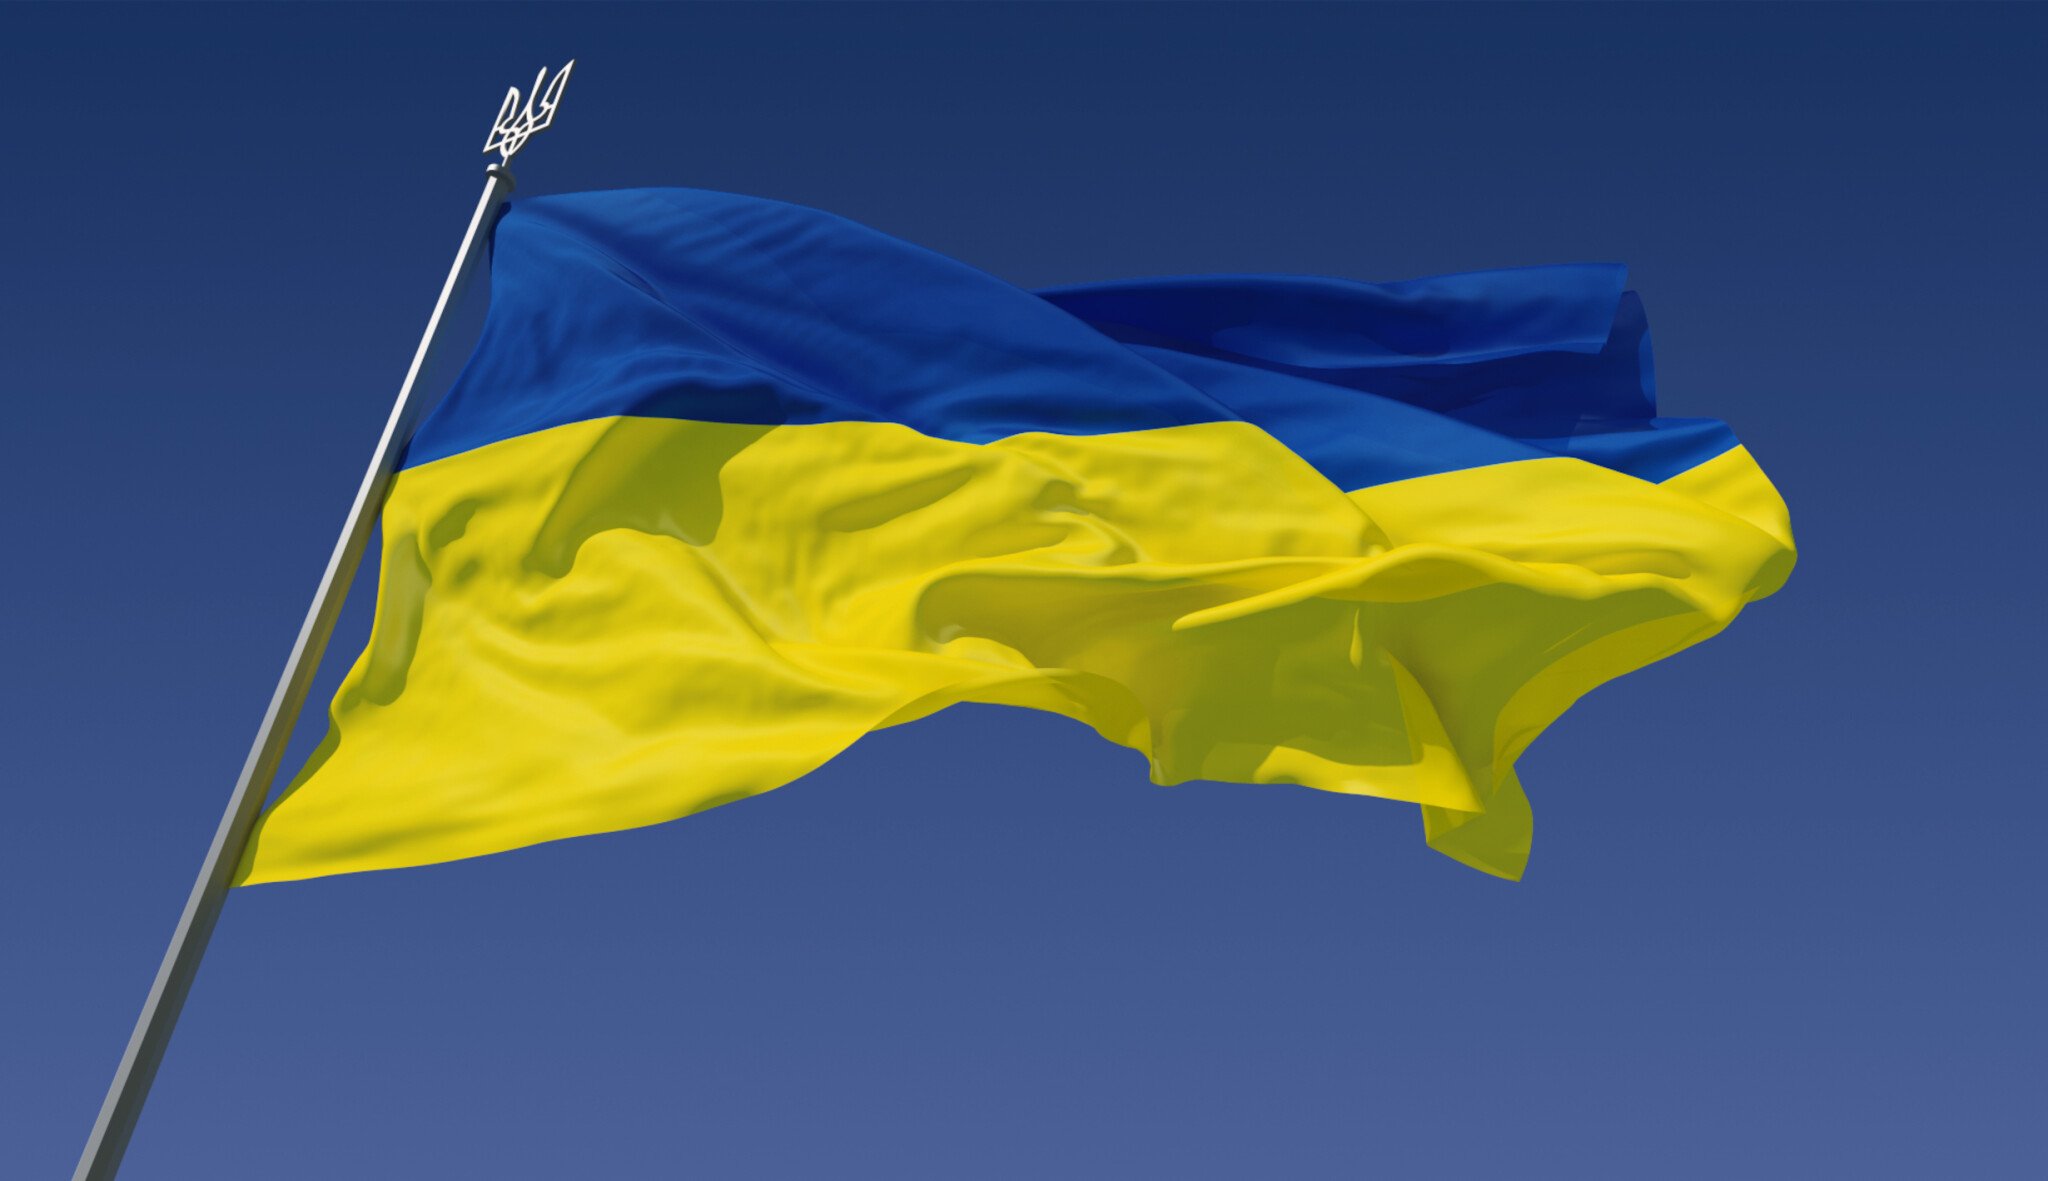 Válka na Ukrajině. Co nového přineslo posledních 24 hodin?